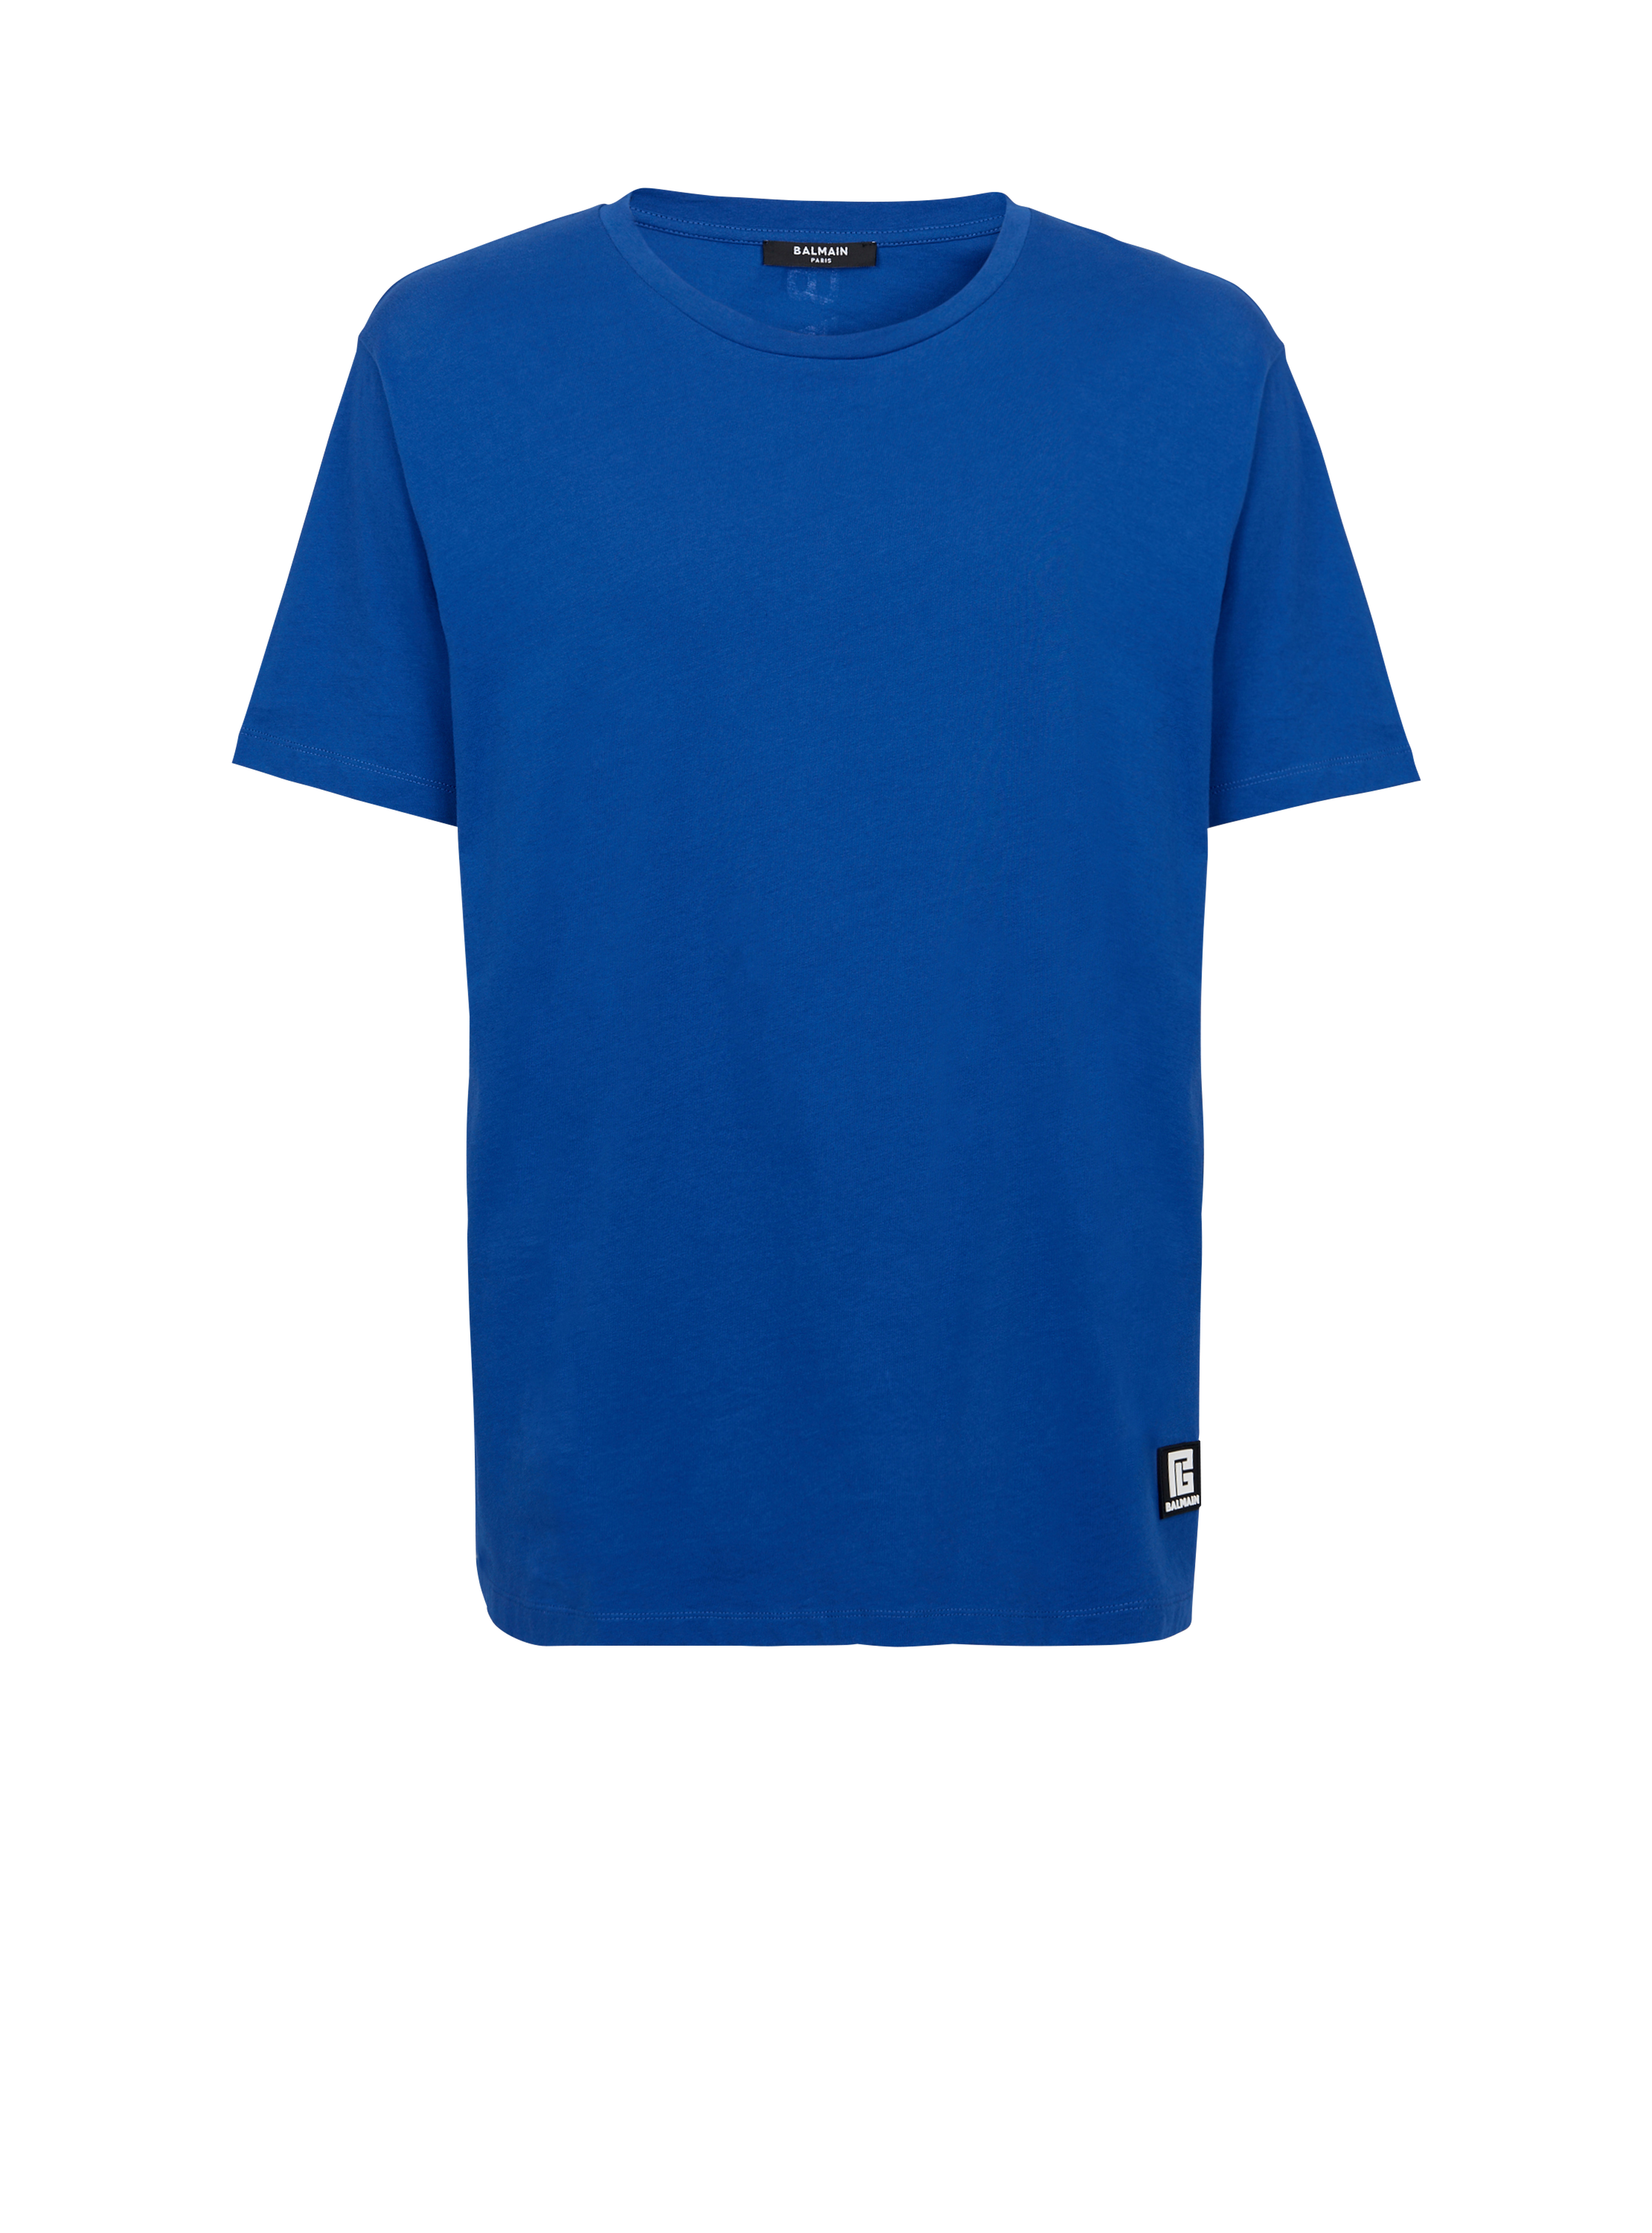 Camiseta oversize de algodón con logotipo de Balmain estampado, azul marino